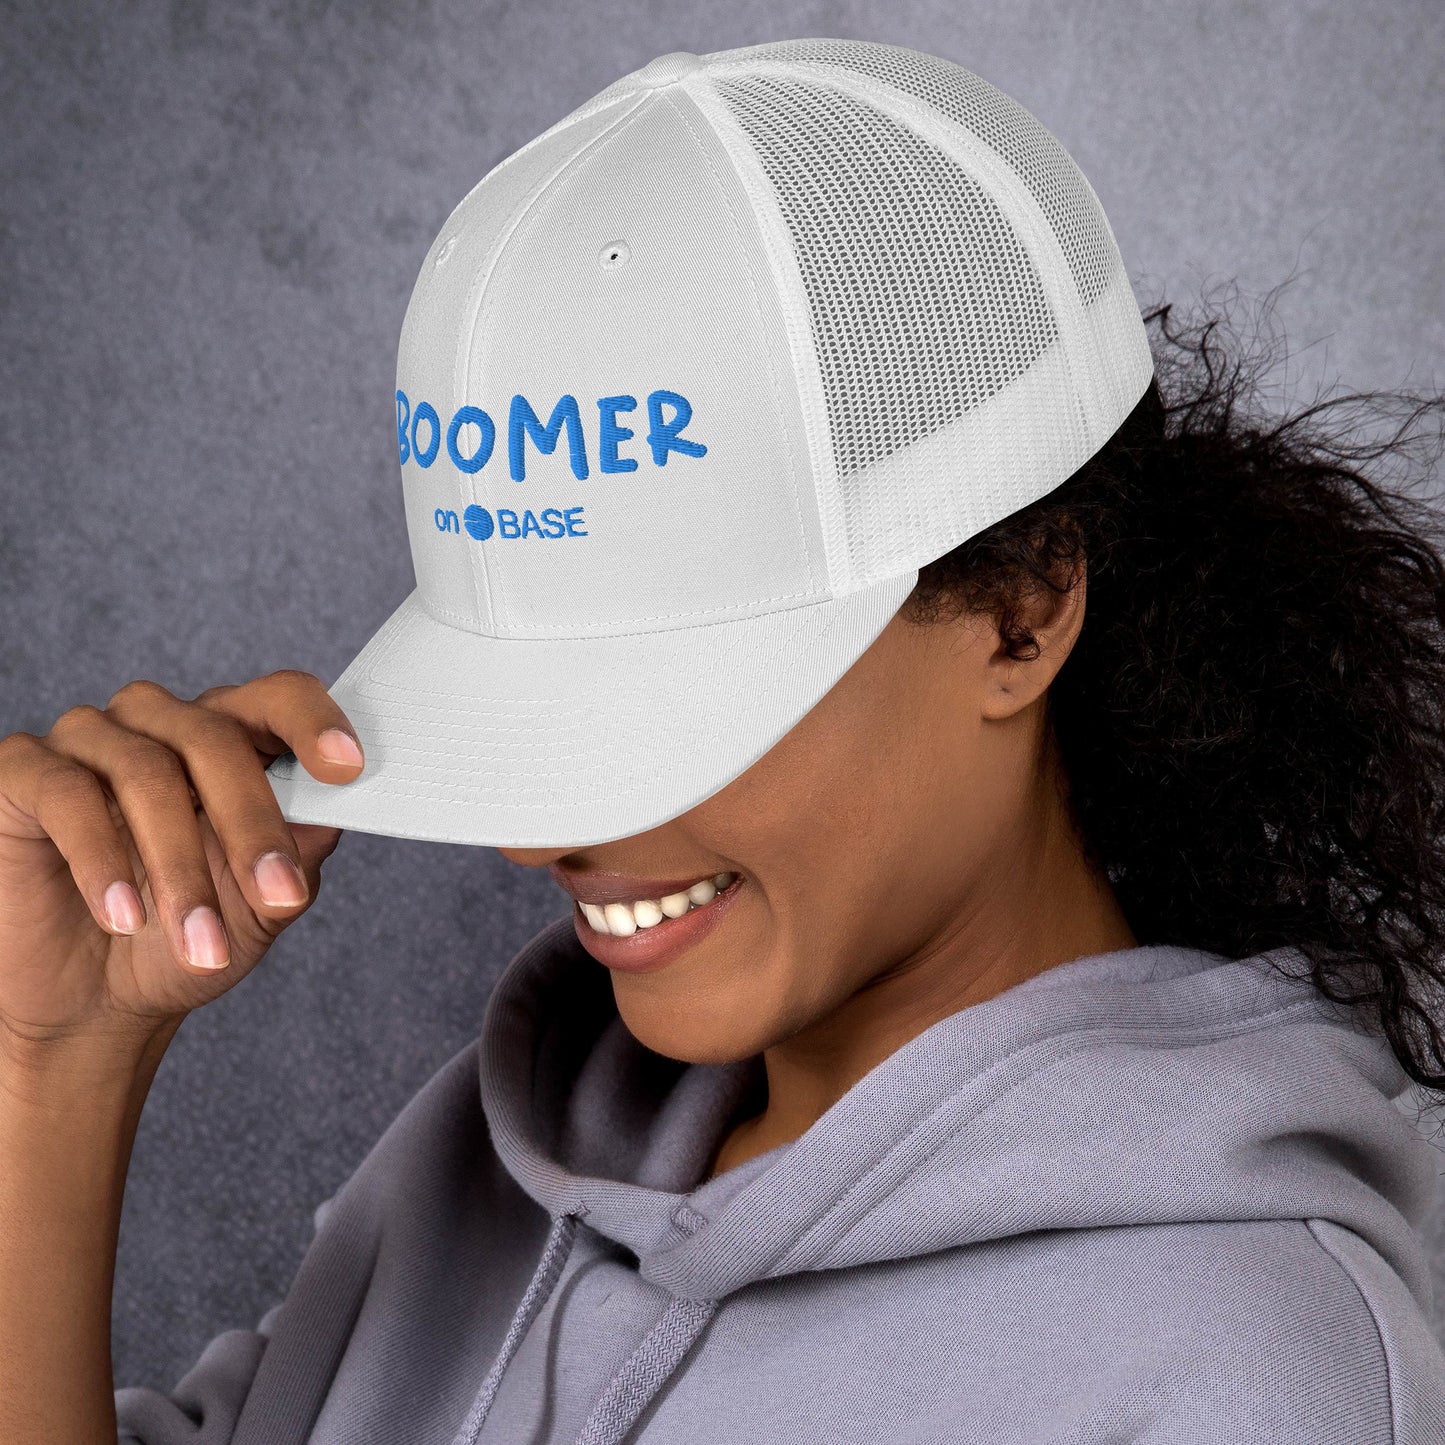 $BOOMER Trucker Cap (Multi-Color)